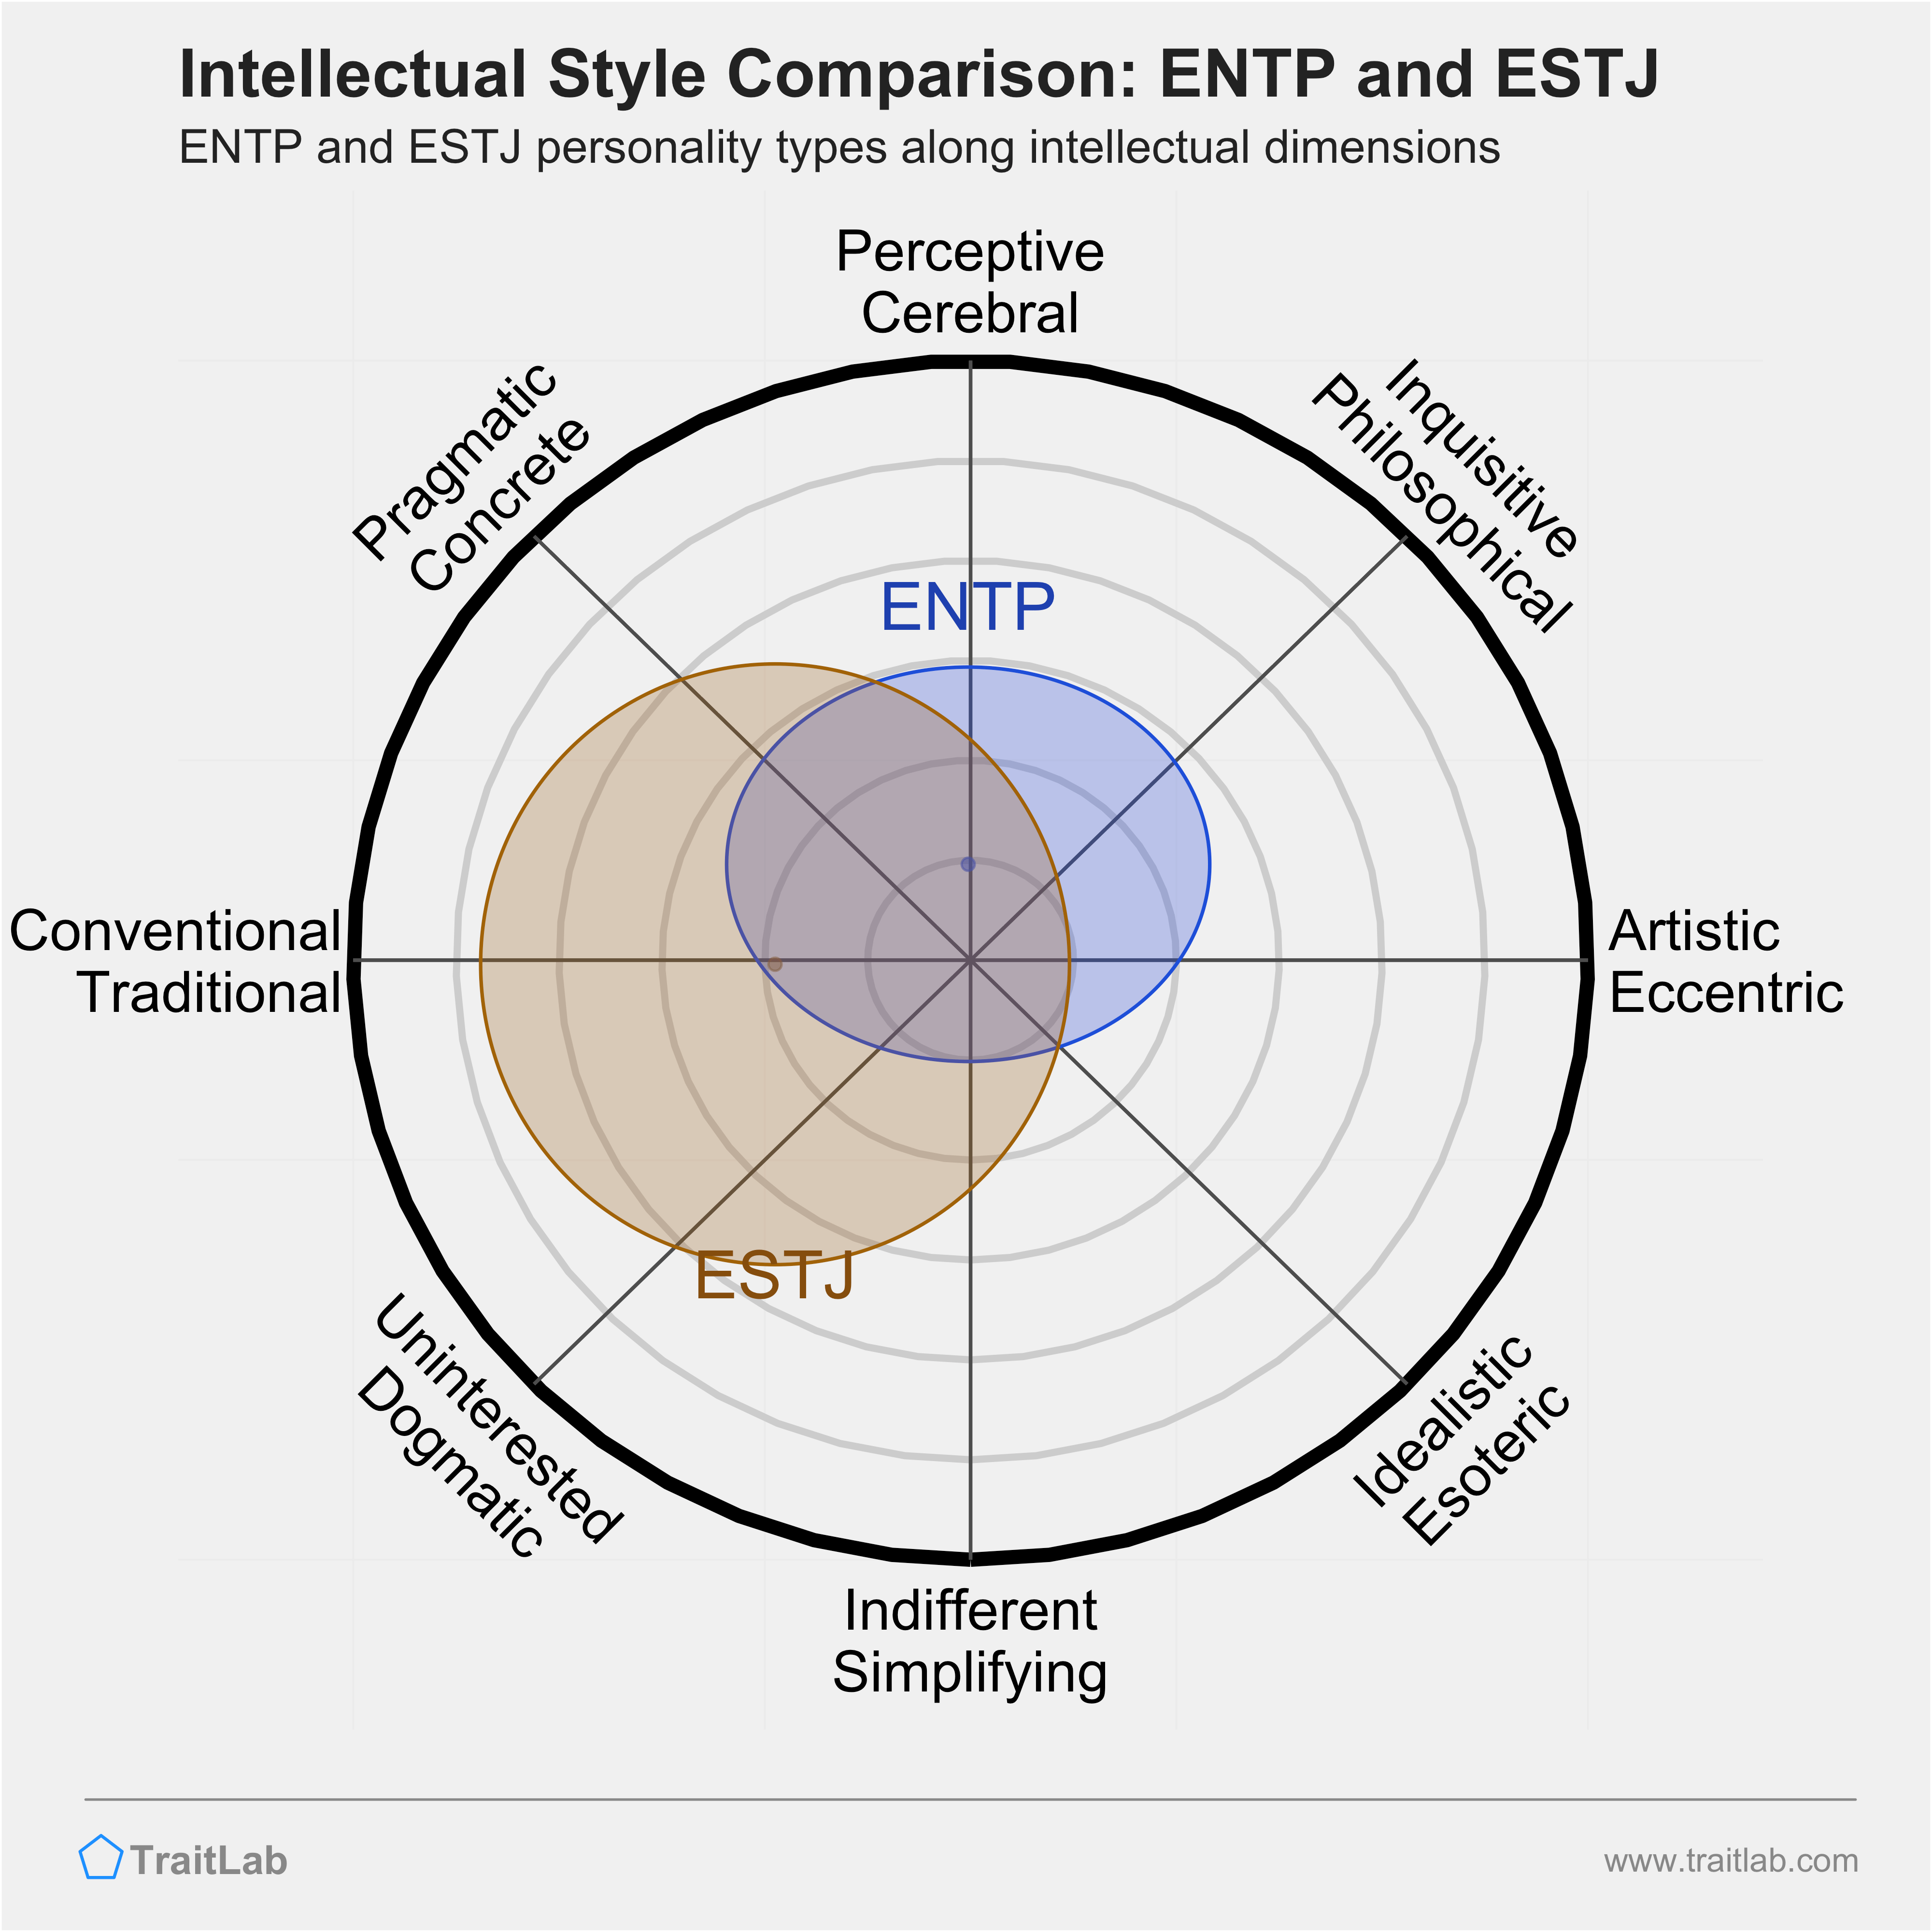 ENTP and ESTJ comparison across intellectual dimensions